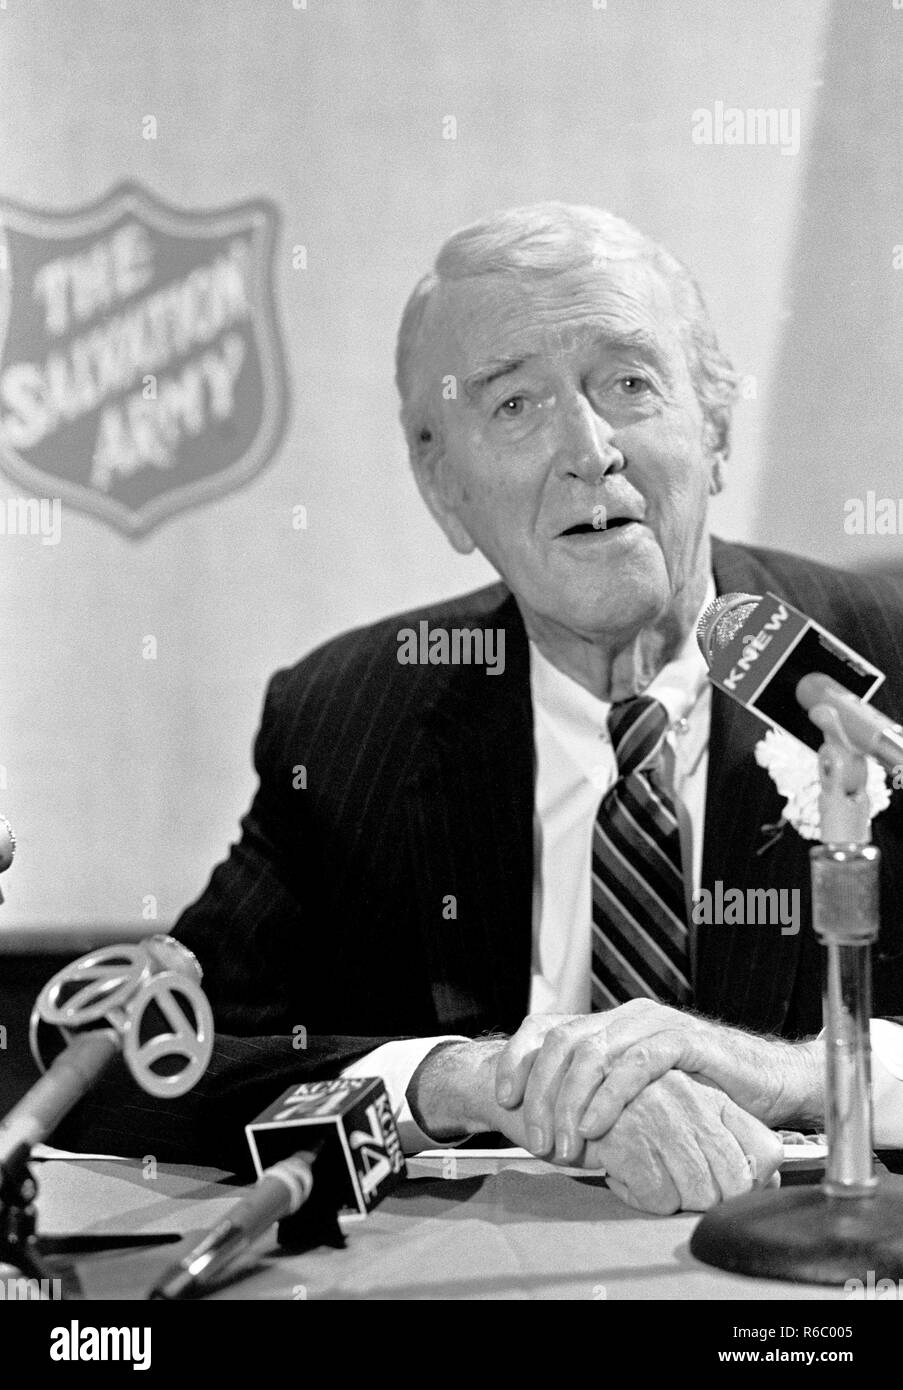 Actor de cine norteamericano, James Stuart hablando en San Francisco en 1980, en apoyo del Ejercito de Salvación. Foto de stock